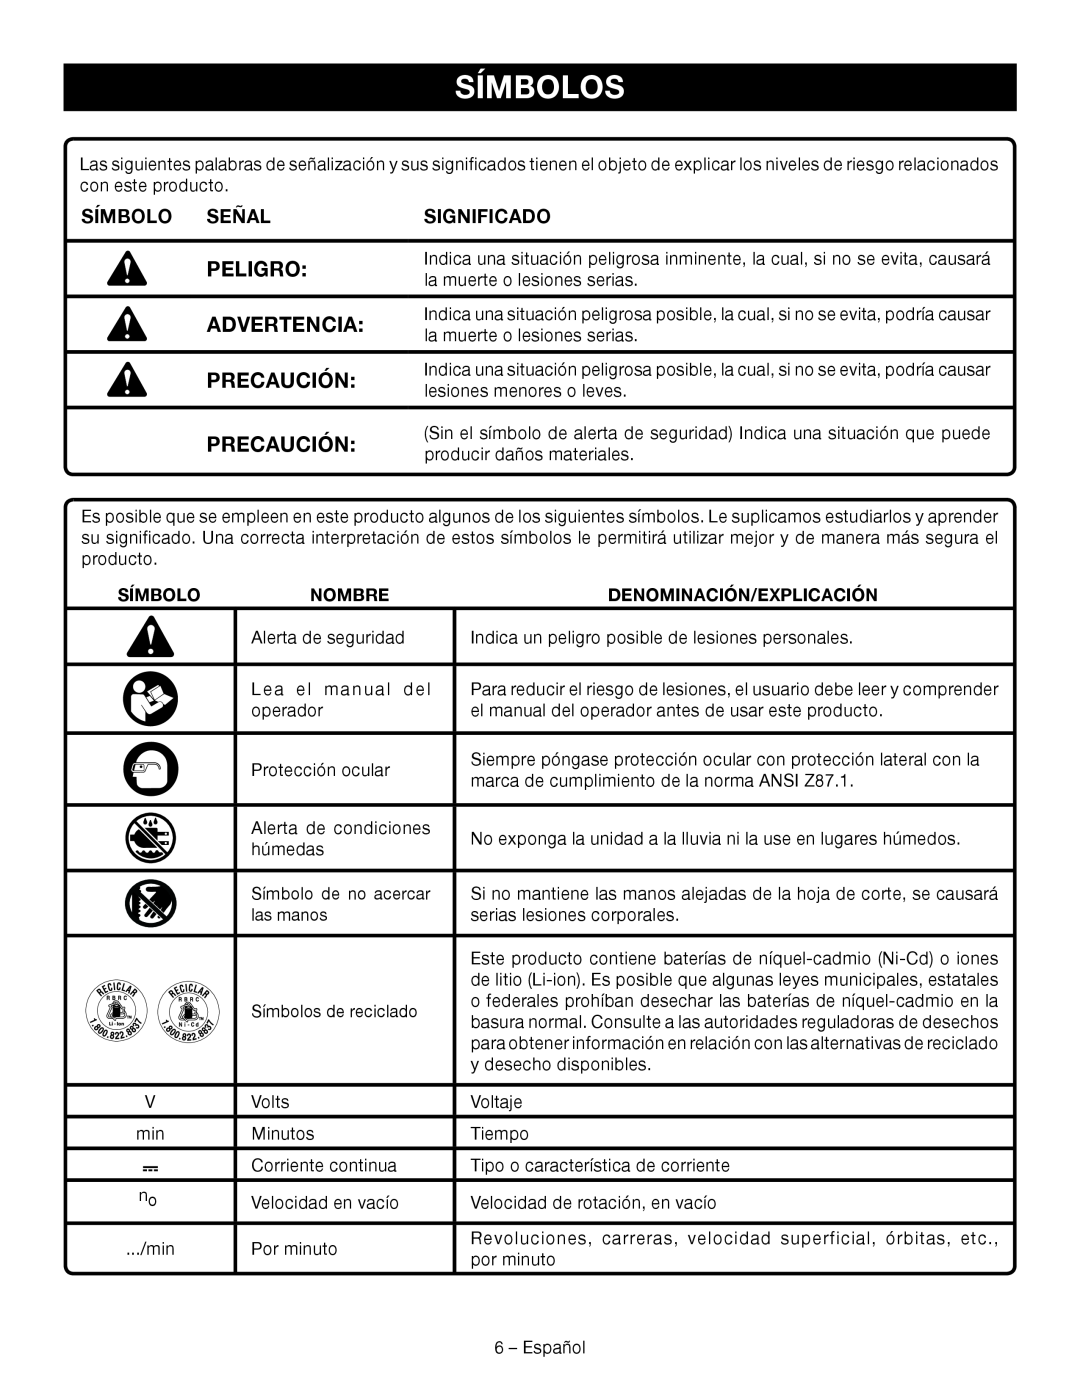 Ryobi P514 manuel dutilisation Símbolos, Peligro, Precaución, Advertencia, Símbolo Señal, Significado 